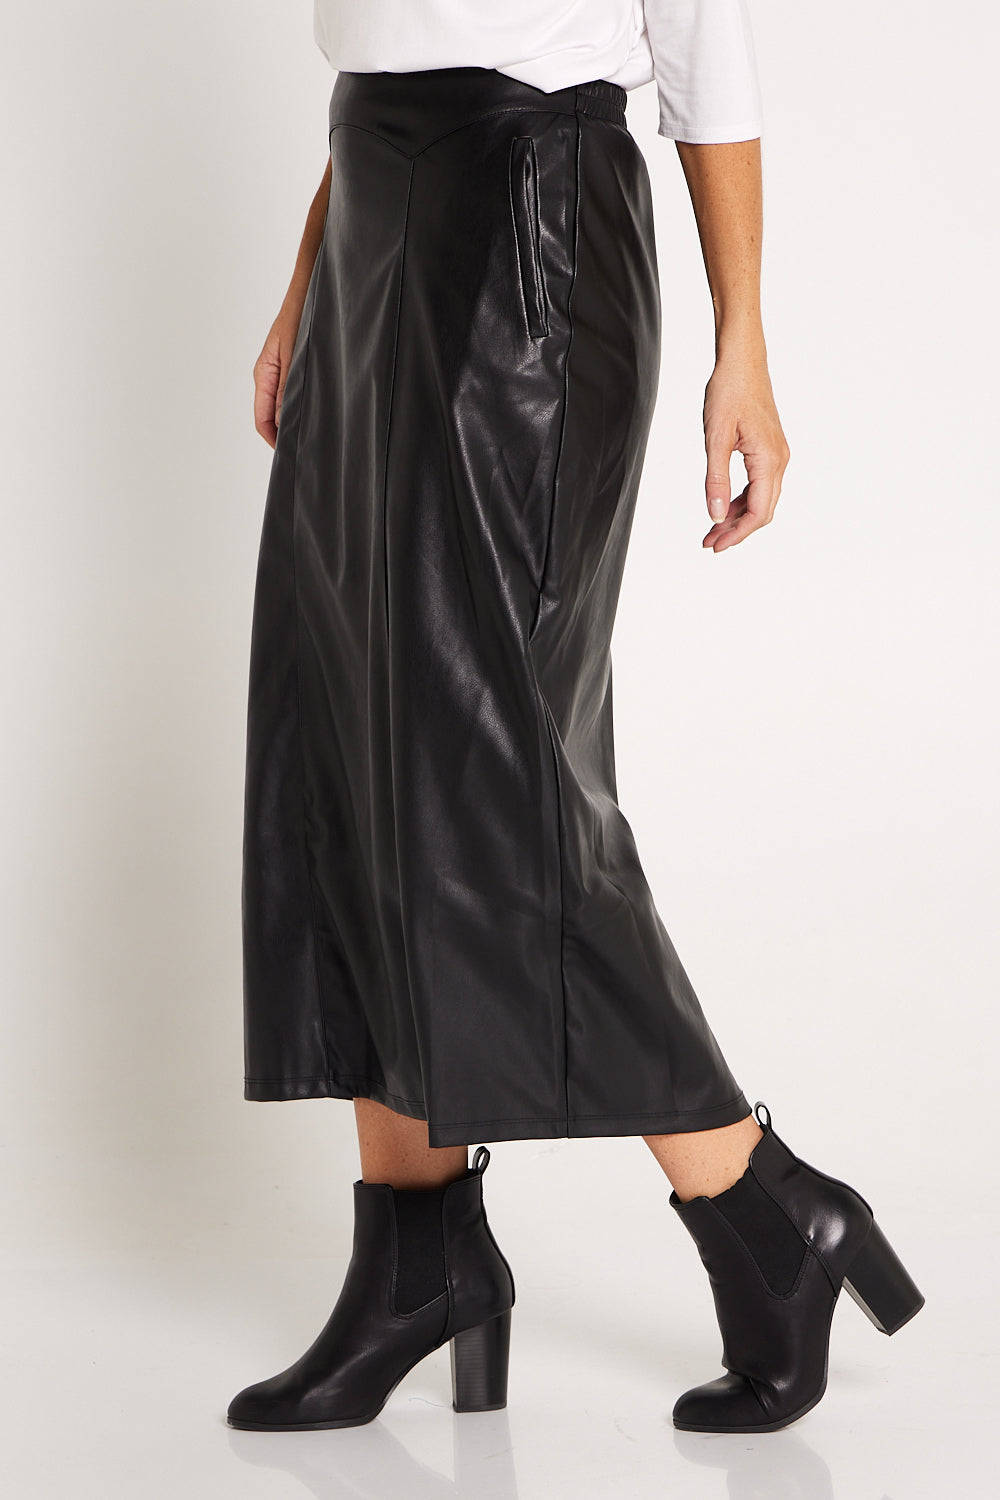 Marlene Vegan Leather Skirt - Black | Mature Women's Winter Skirts ...